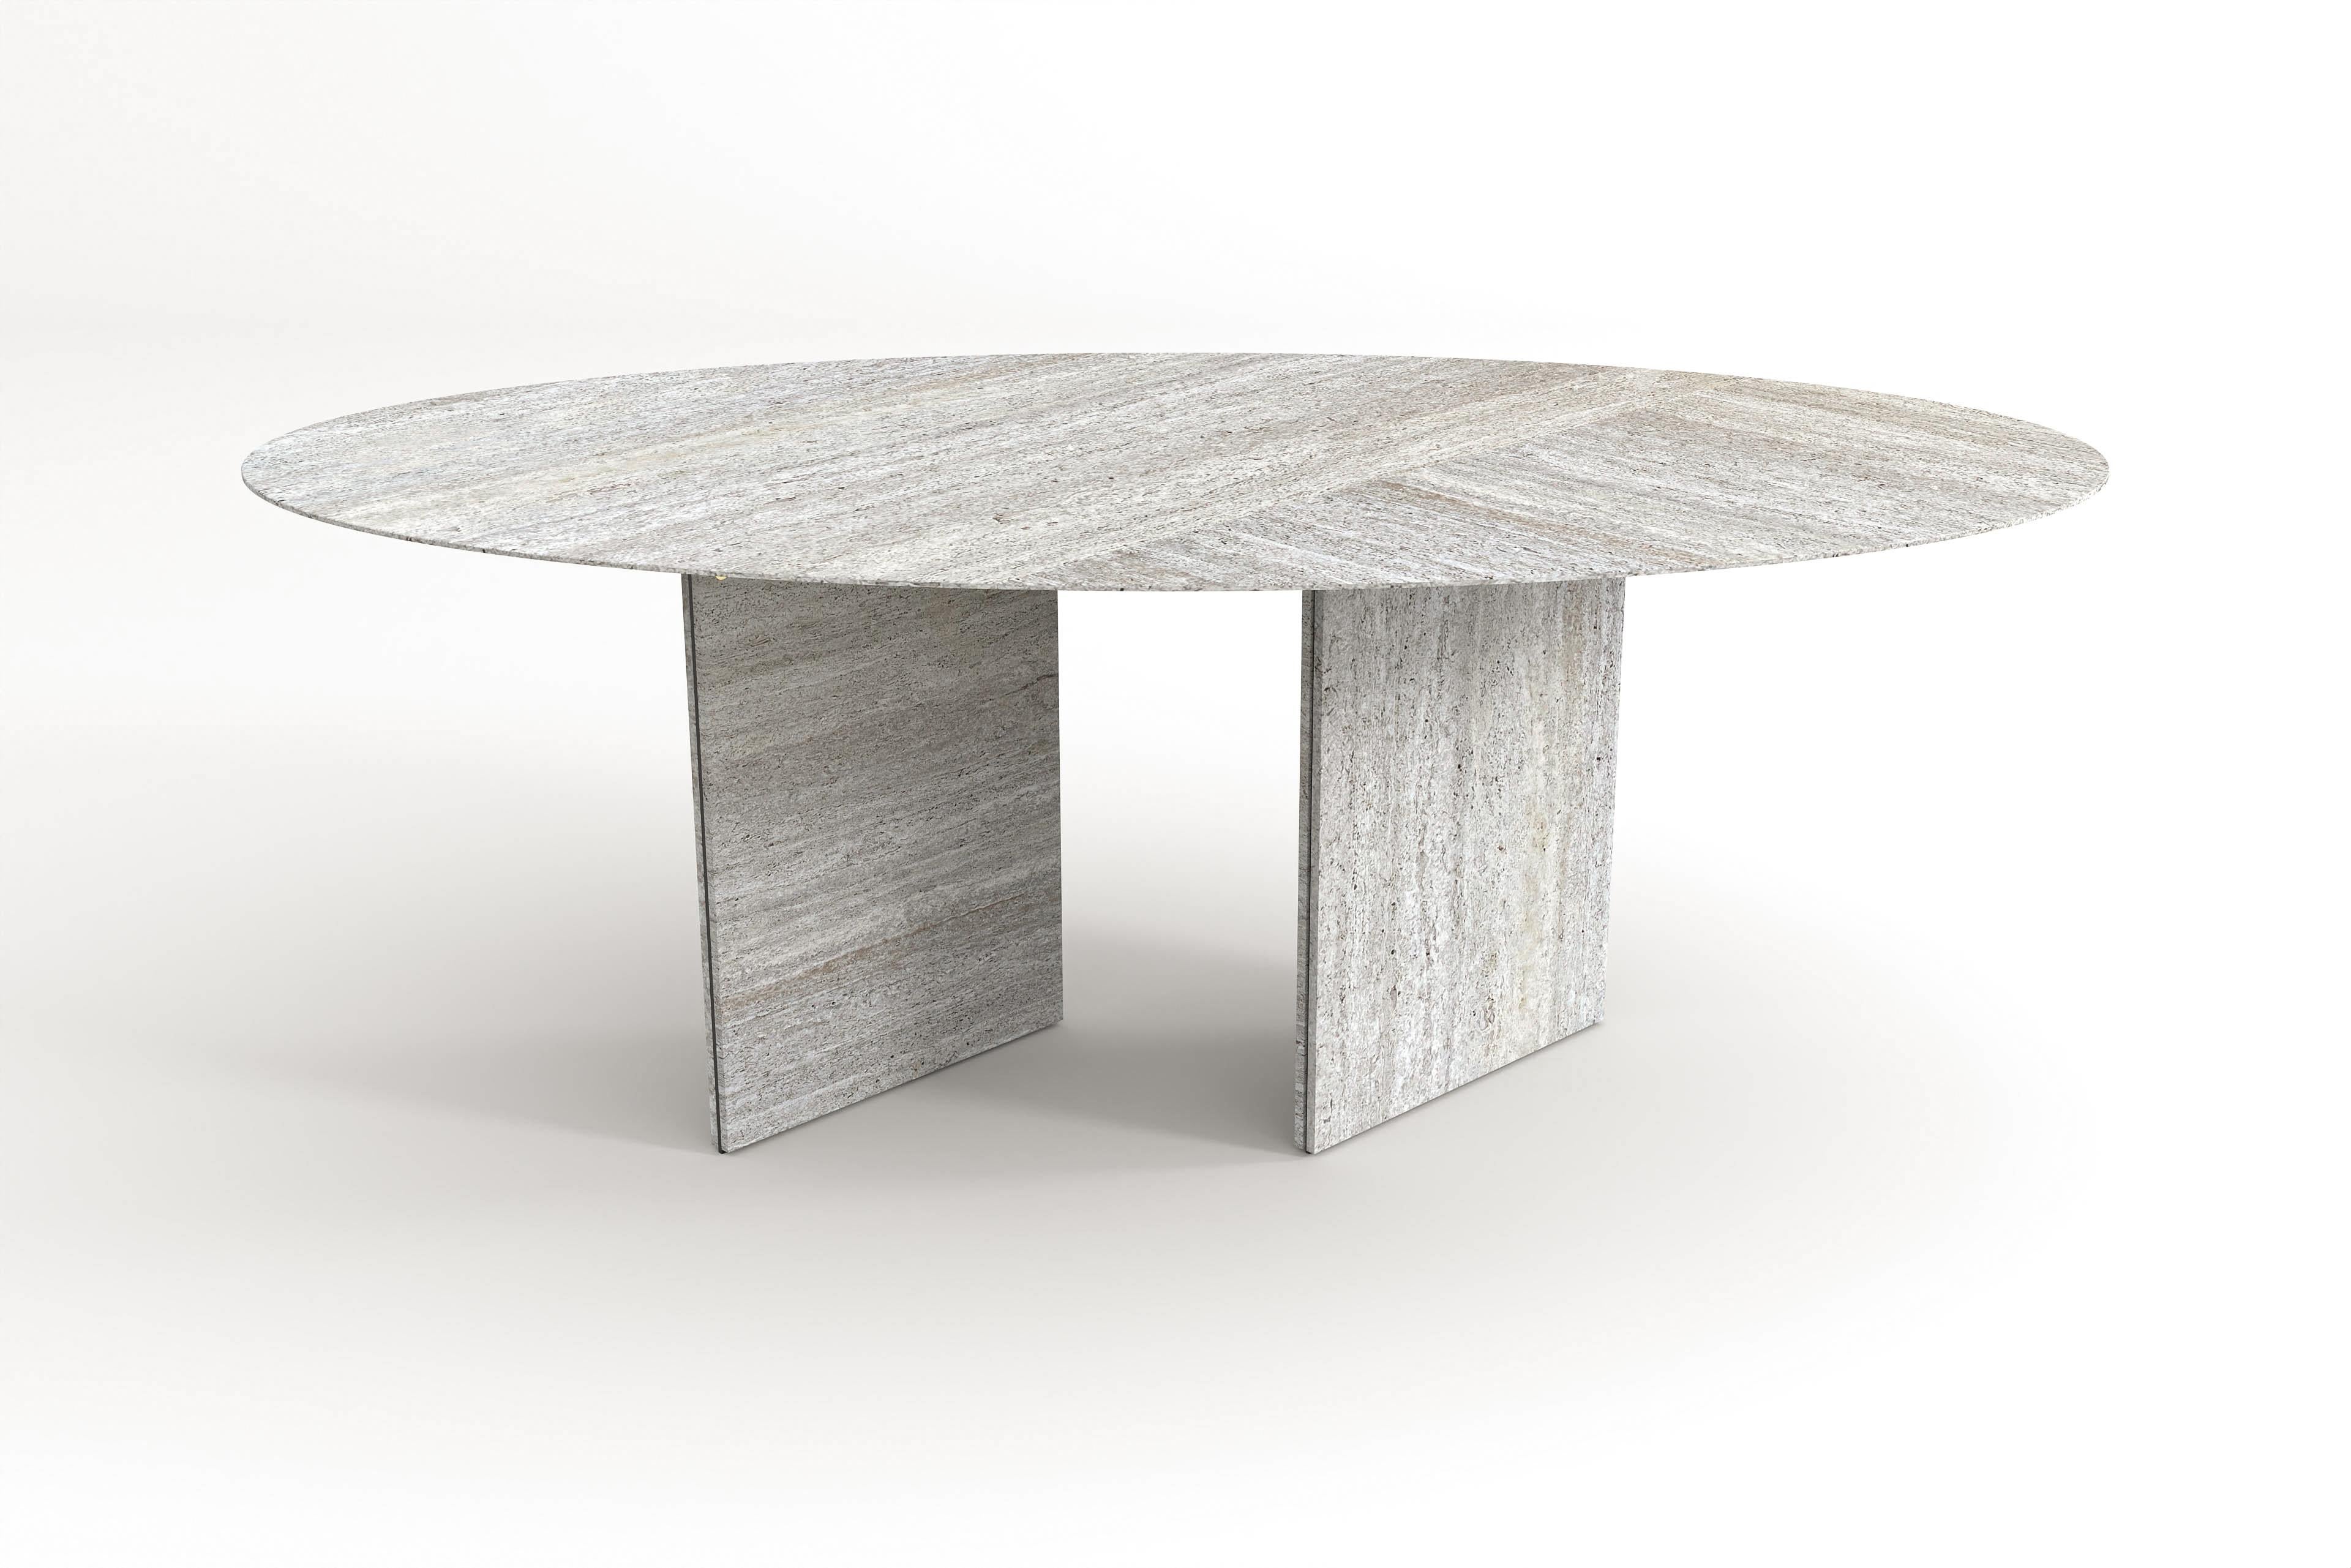 Ellipse 02 ist eine Neugestaltung unserer klassischen Ellipse-Tische. Sie entwickelte sich zu einer neuen, faszinierenden Komposition, ohne den Kern (die Form) des Originals zu verlieren. Diese Tabelle muss einfach immer wieder angeschaut werden. Es